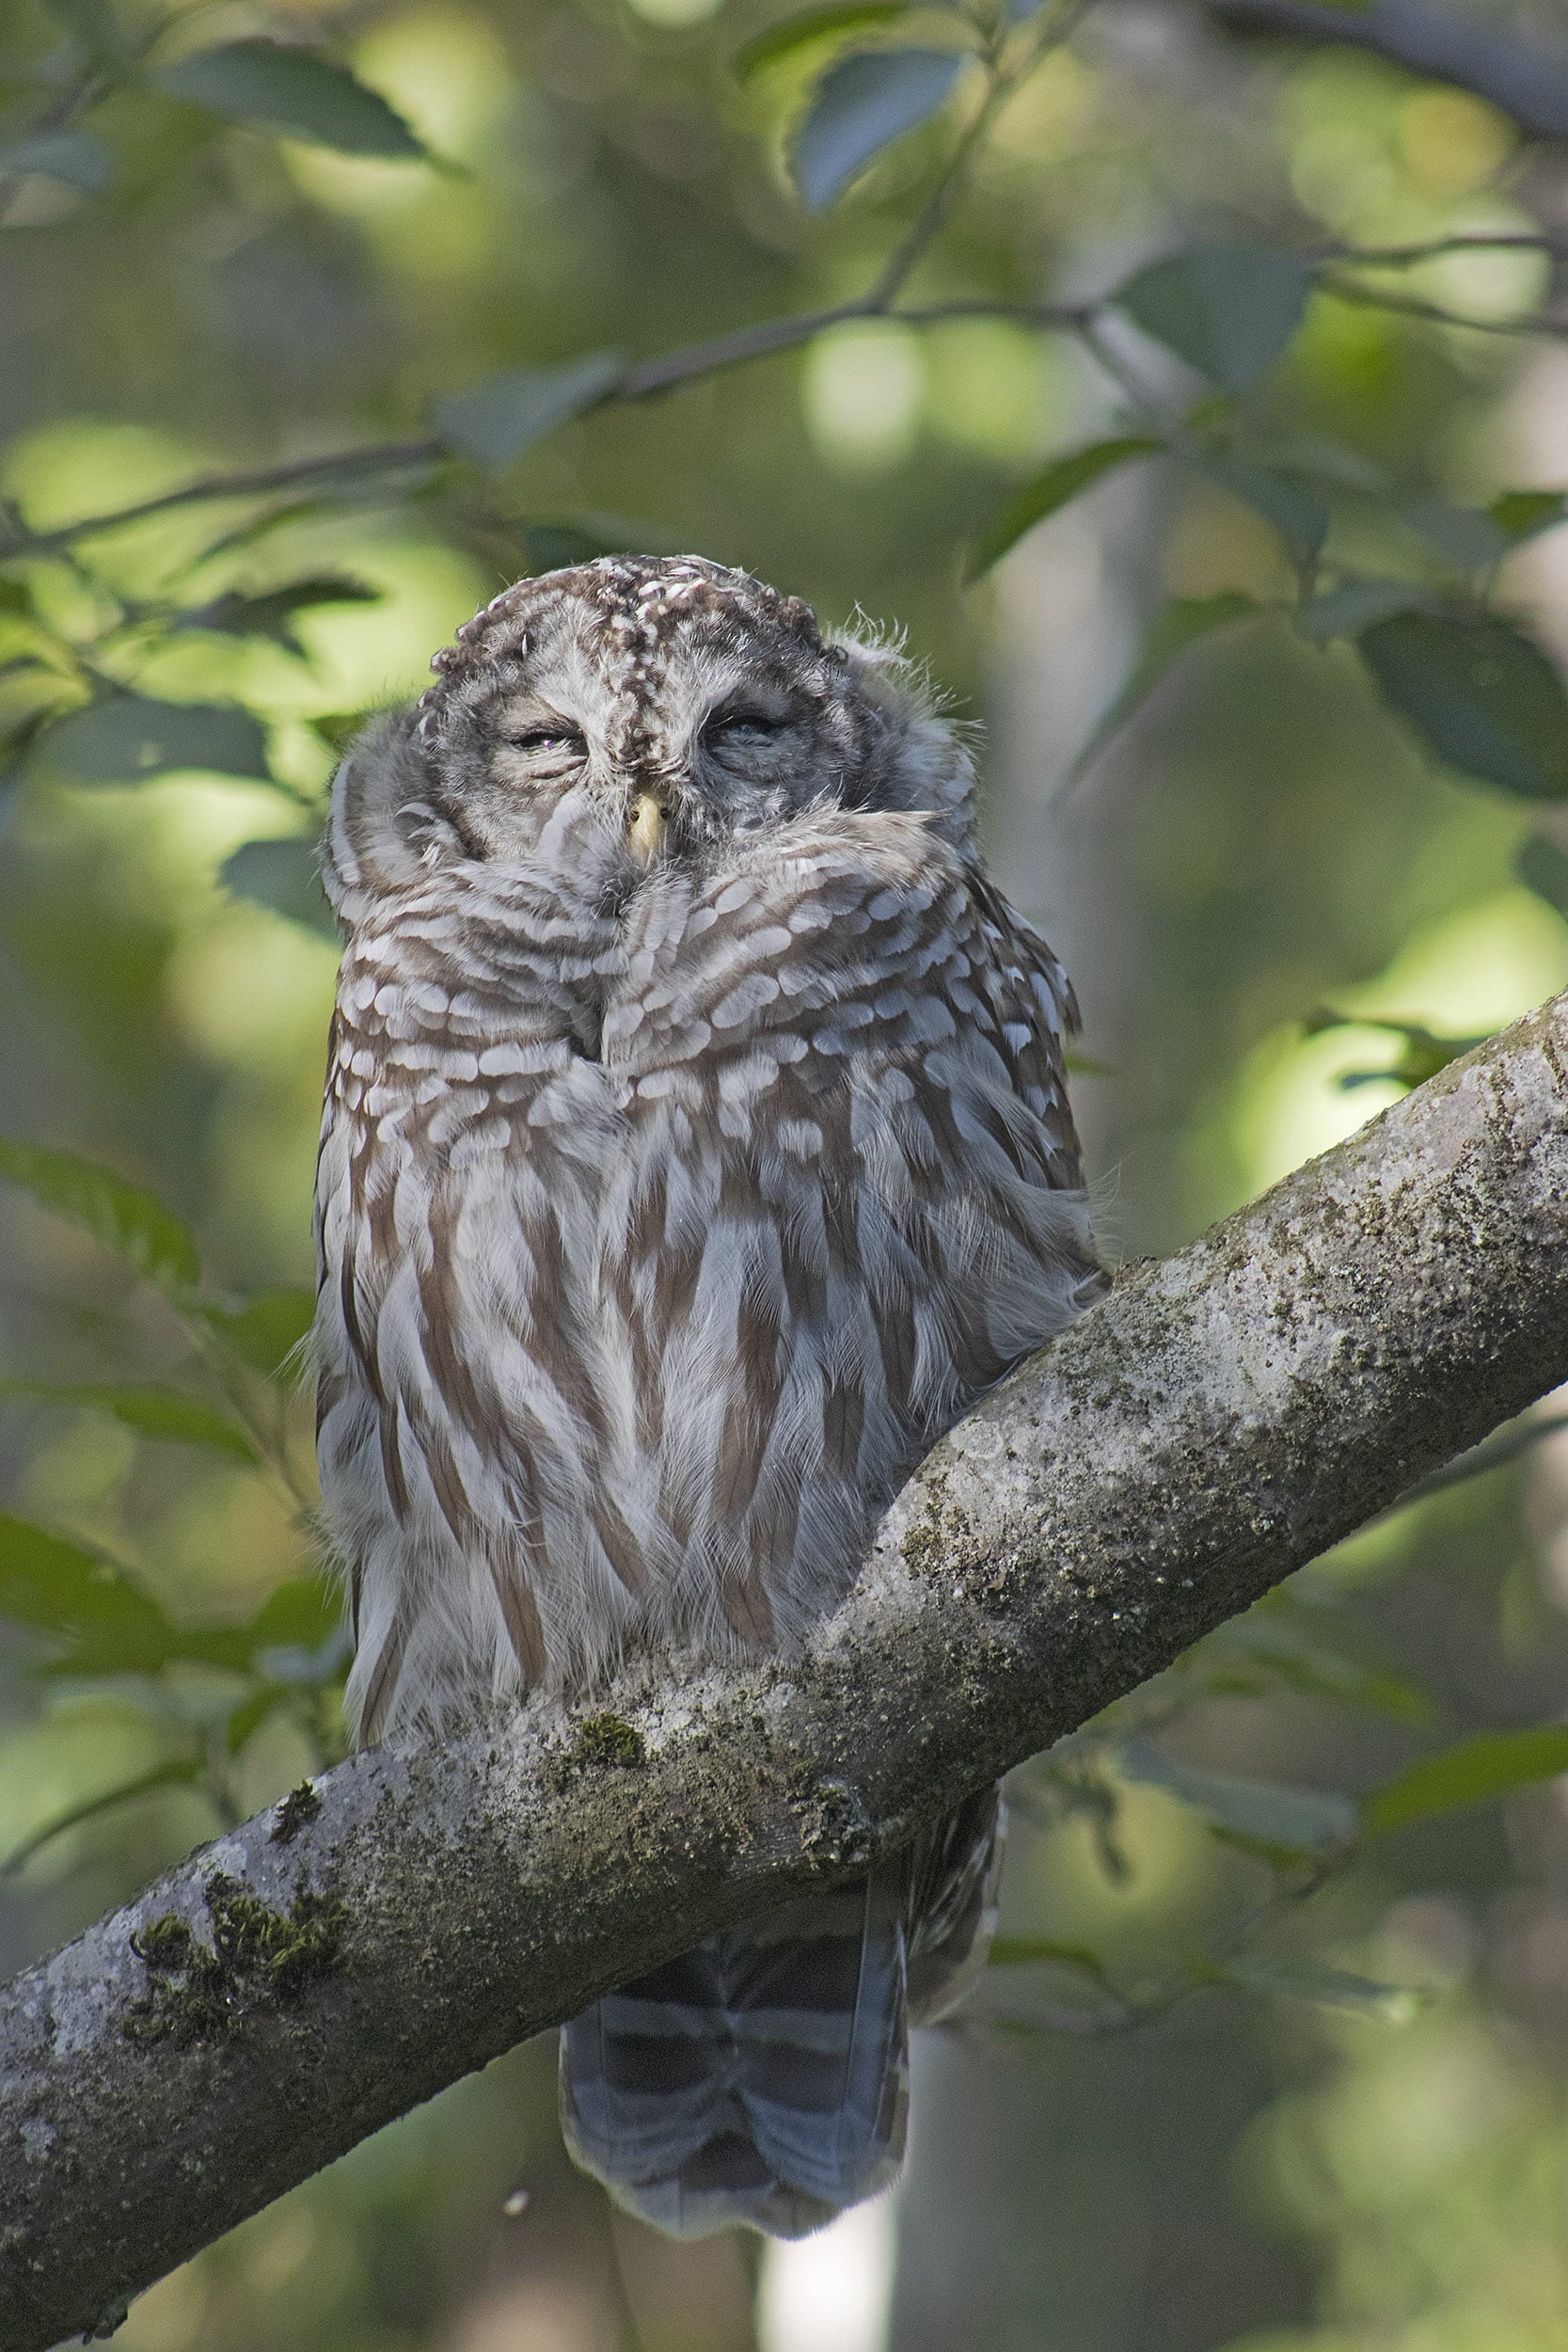 Barred Owl, September 21, 2021